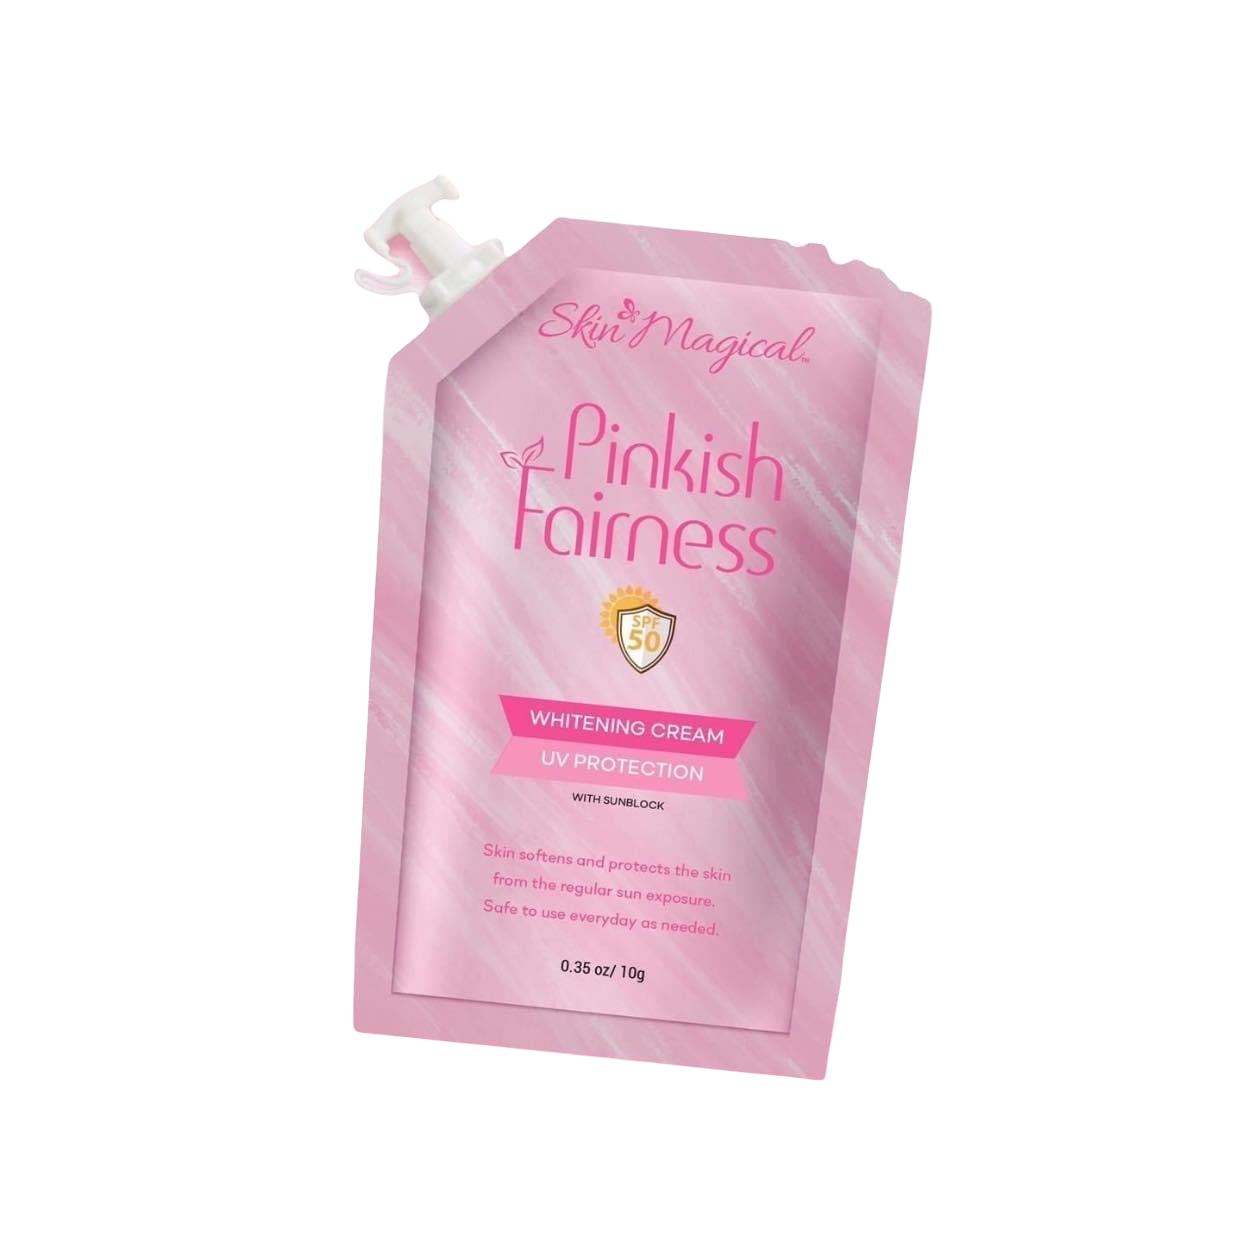 Skin Magical Pinkish Fairness Whitening Cream 10g